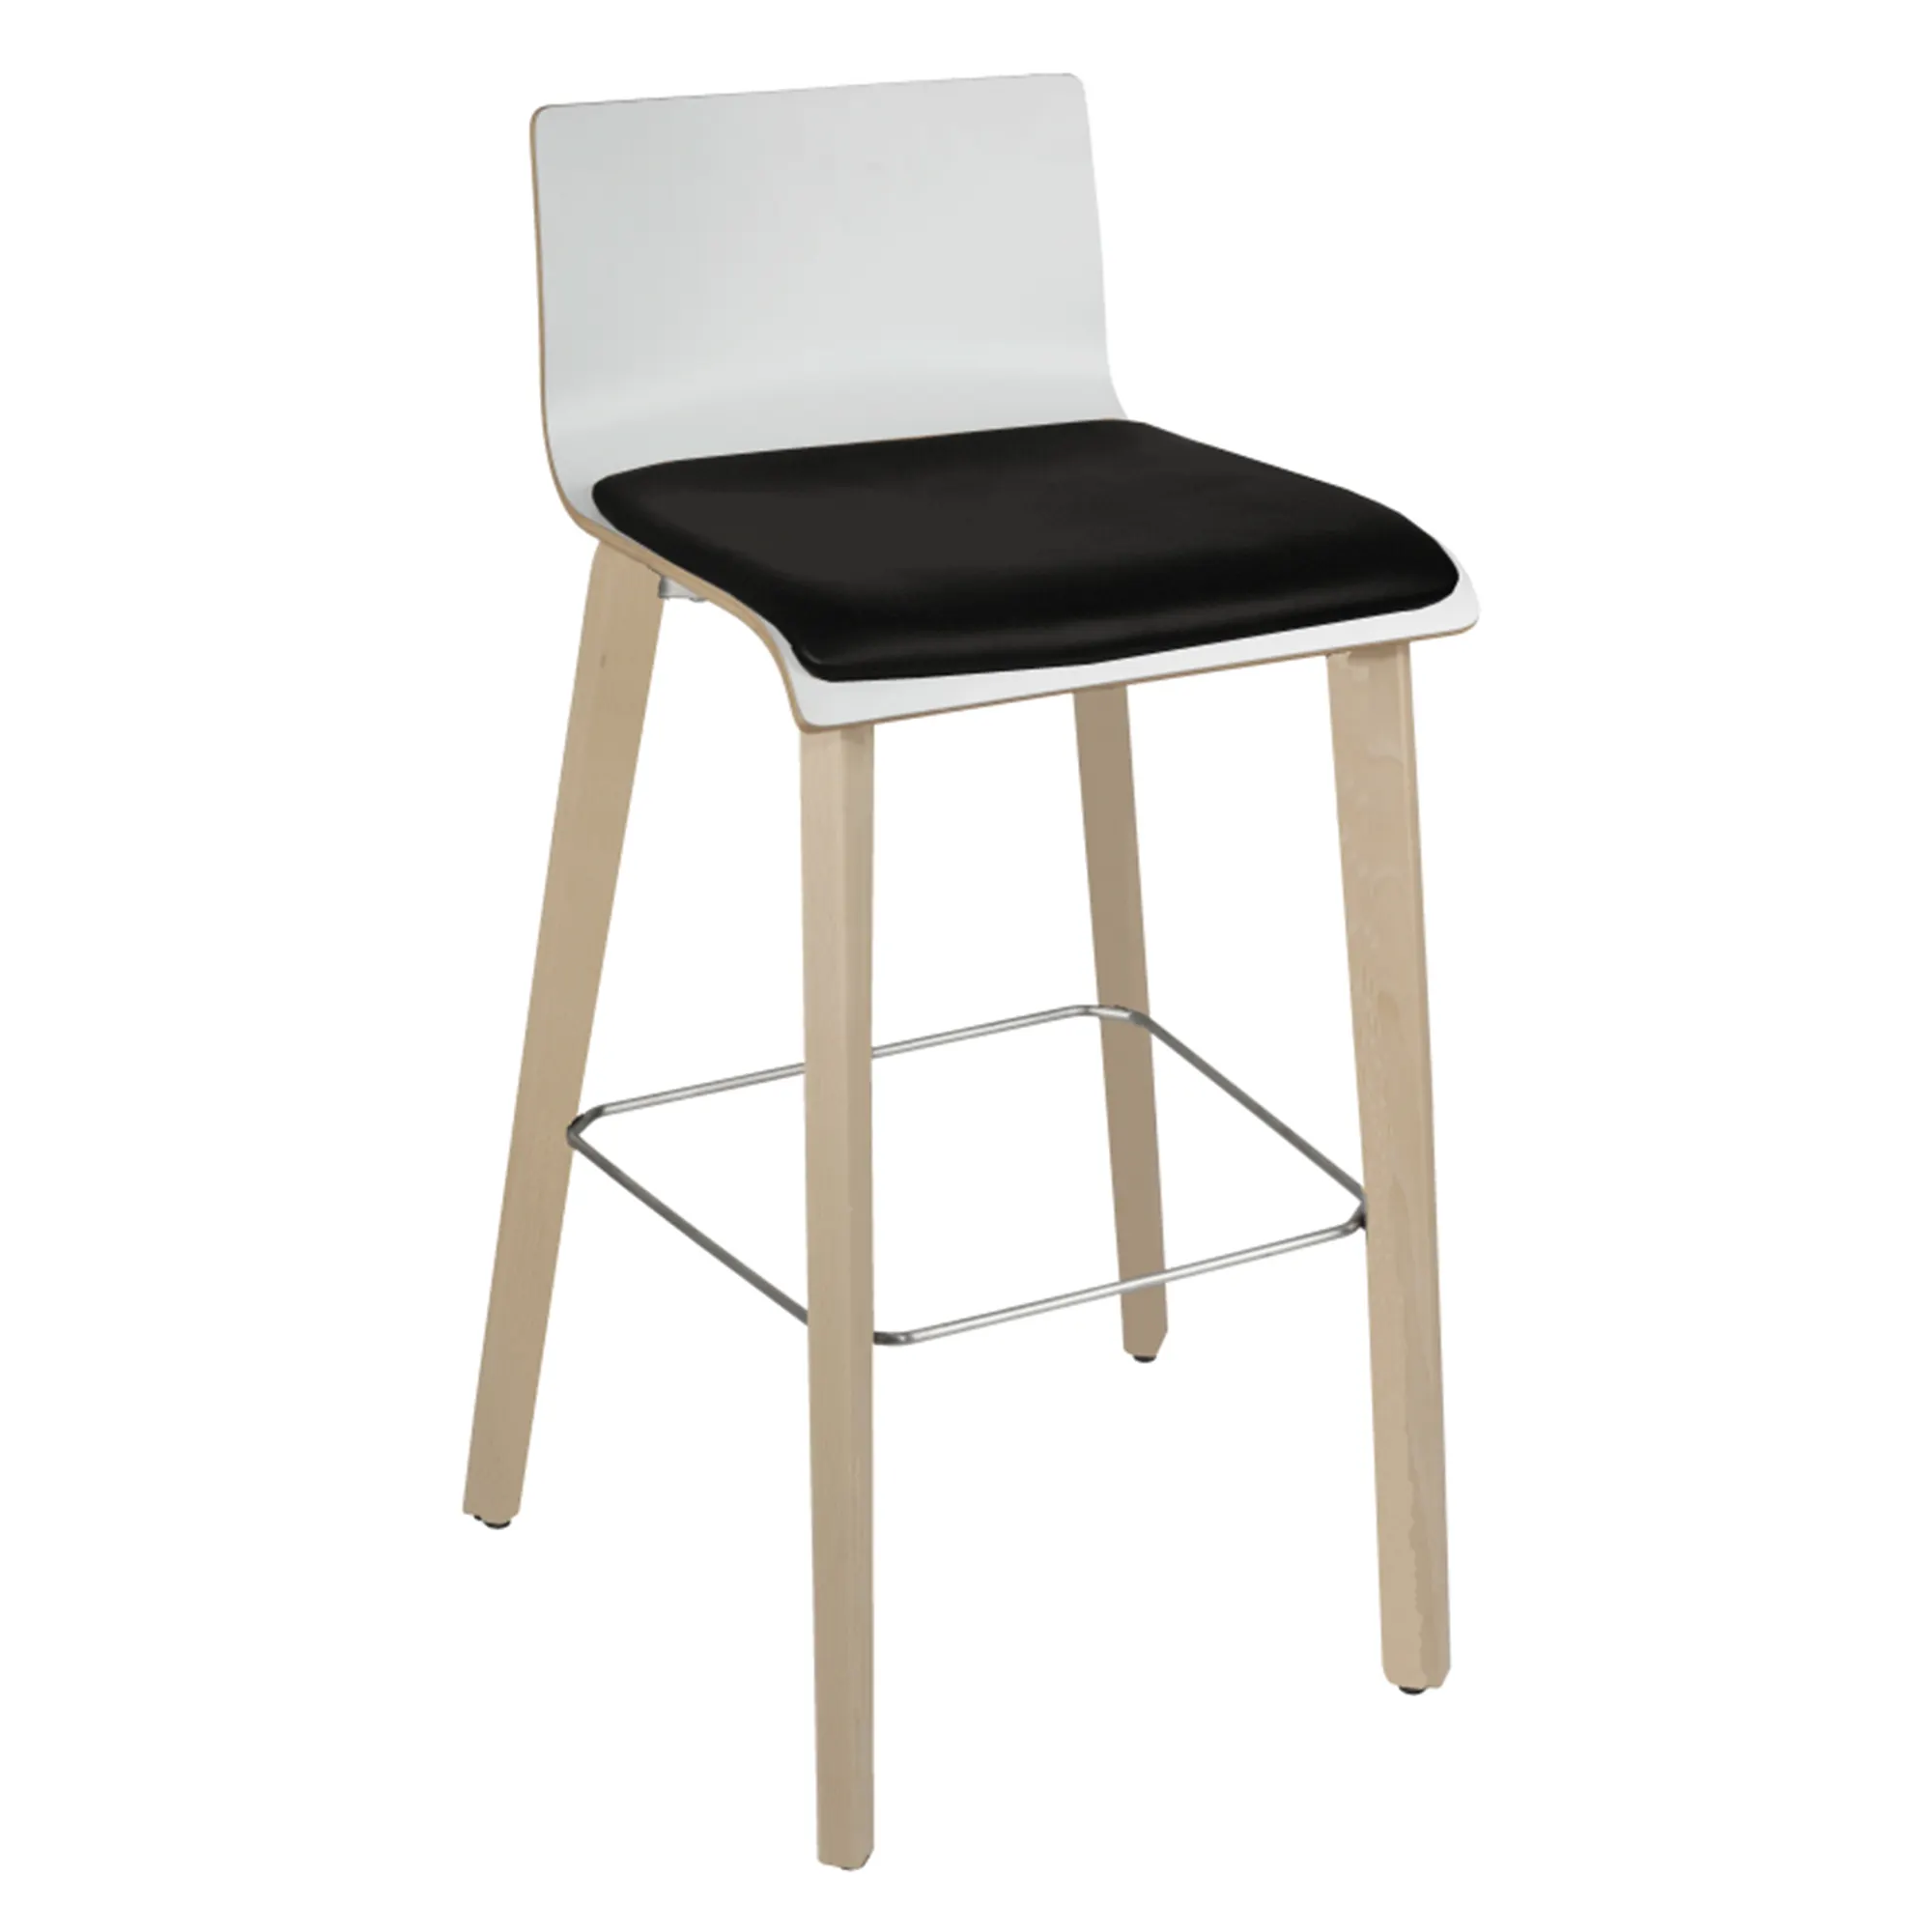 TSXY venta al por mayor nórdico de lujo moderno desayuno sillas altas taburetes de bar para cocina restaurante silla